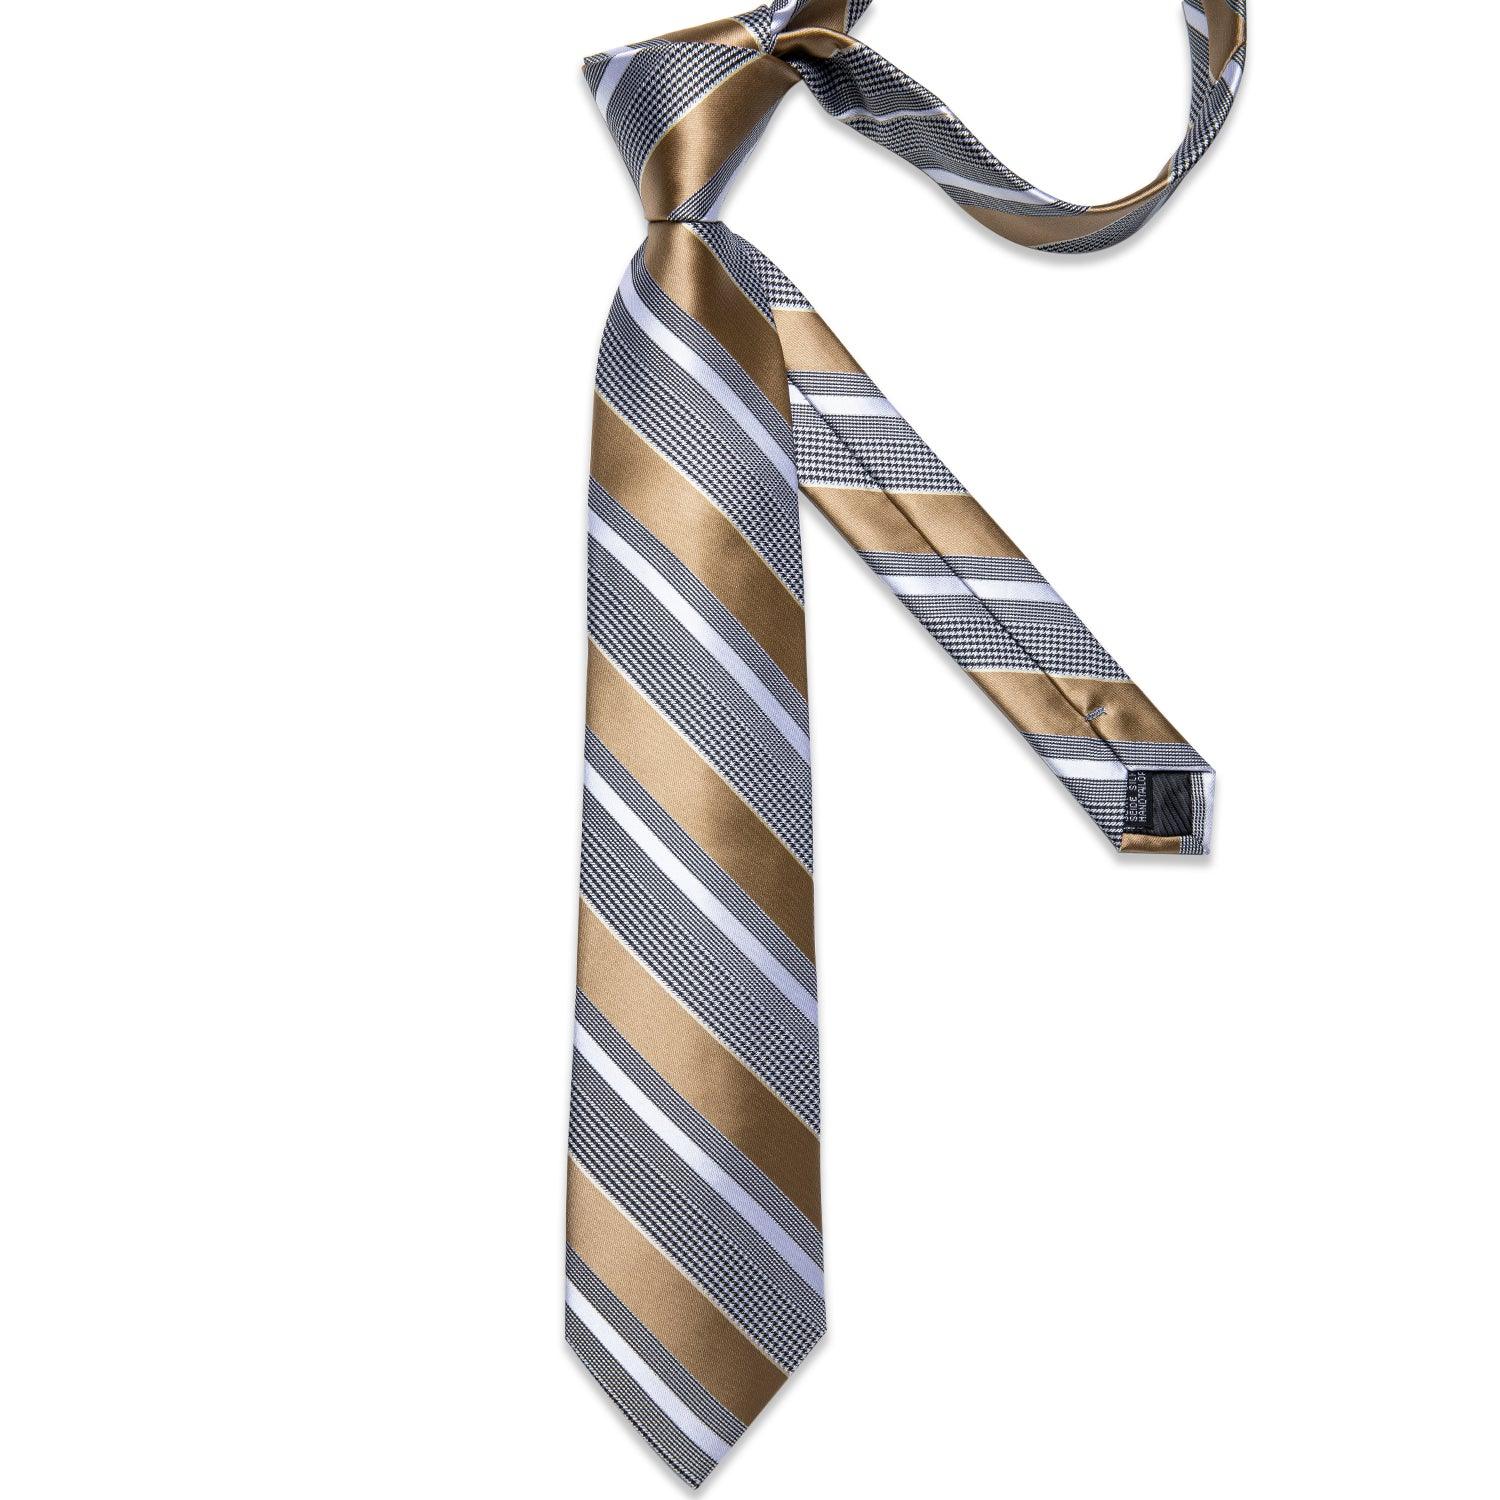 Khaki Striped Silk Tie Pocket Square Cufflink Set - STYLETIE